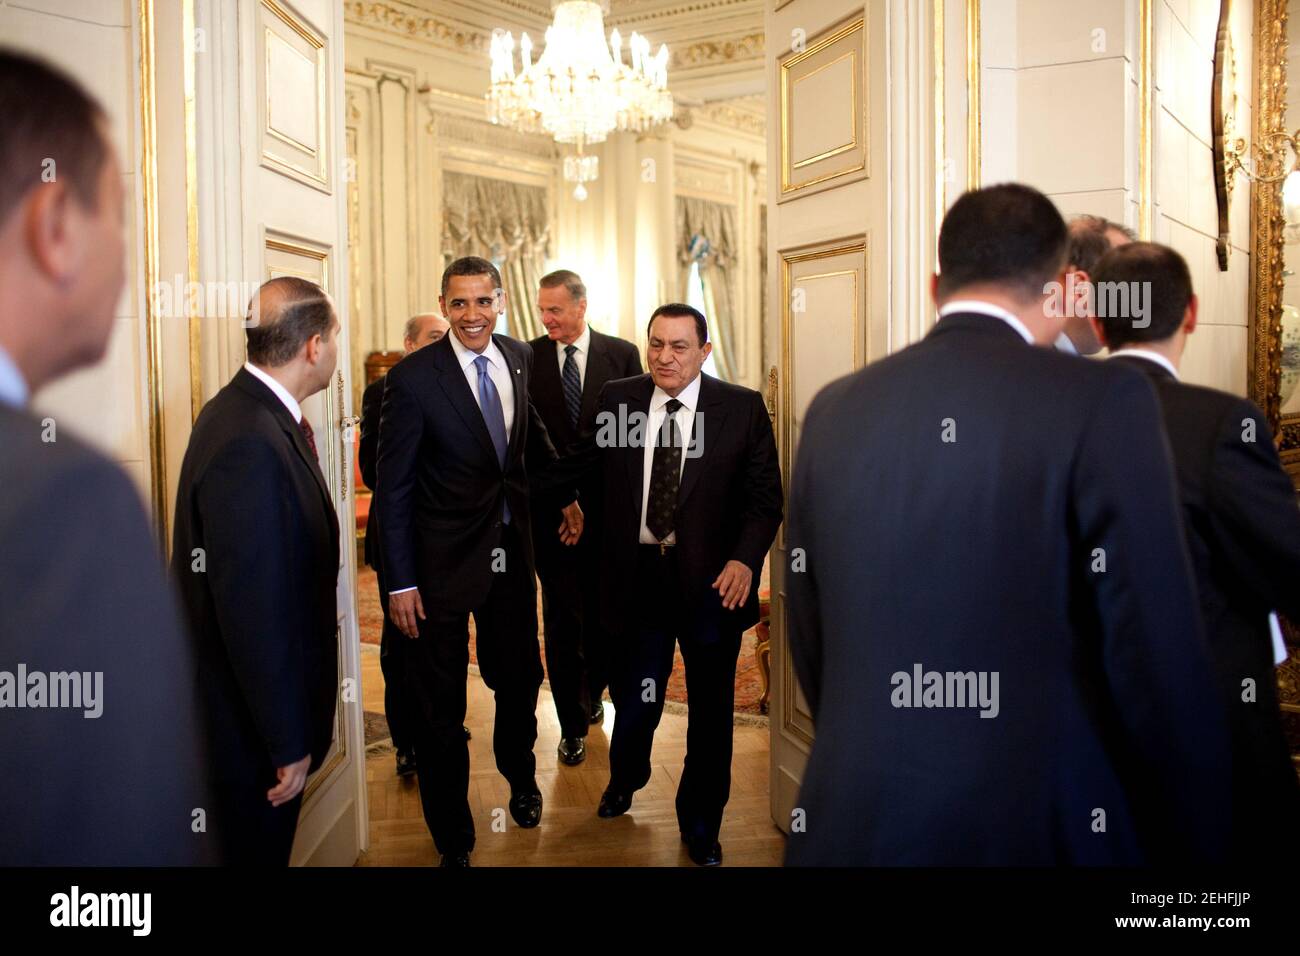 President Barack Obama meets with Egyptian President Hosni Mubarak in Cairo, Egypt, June 4, 2009. Stock Photo